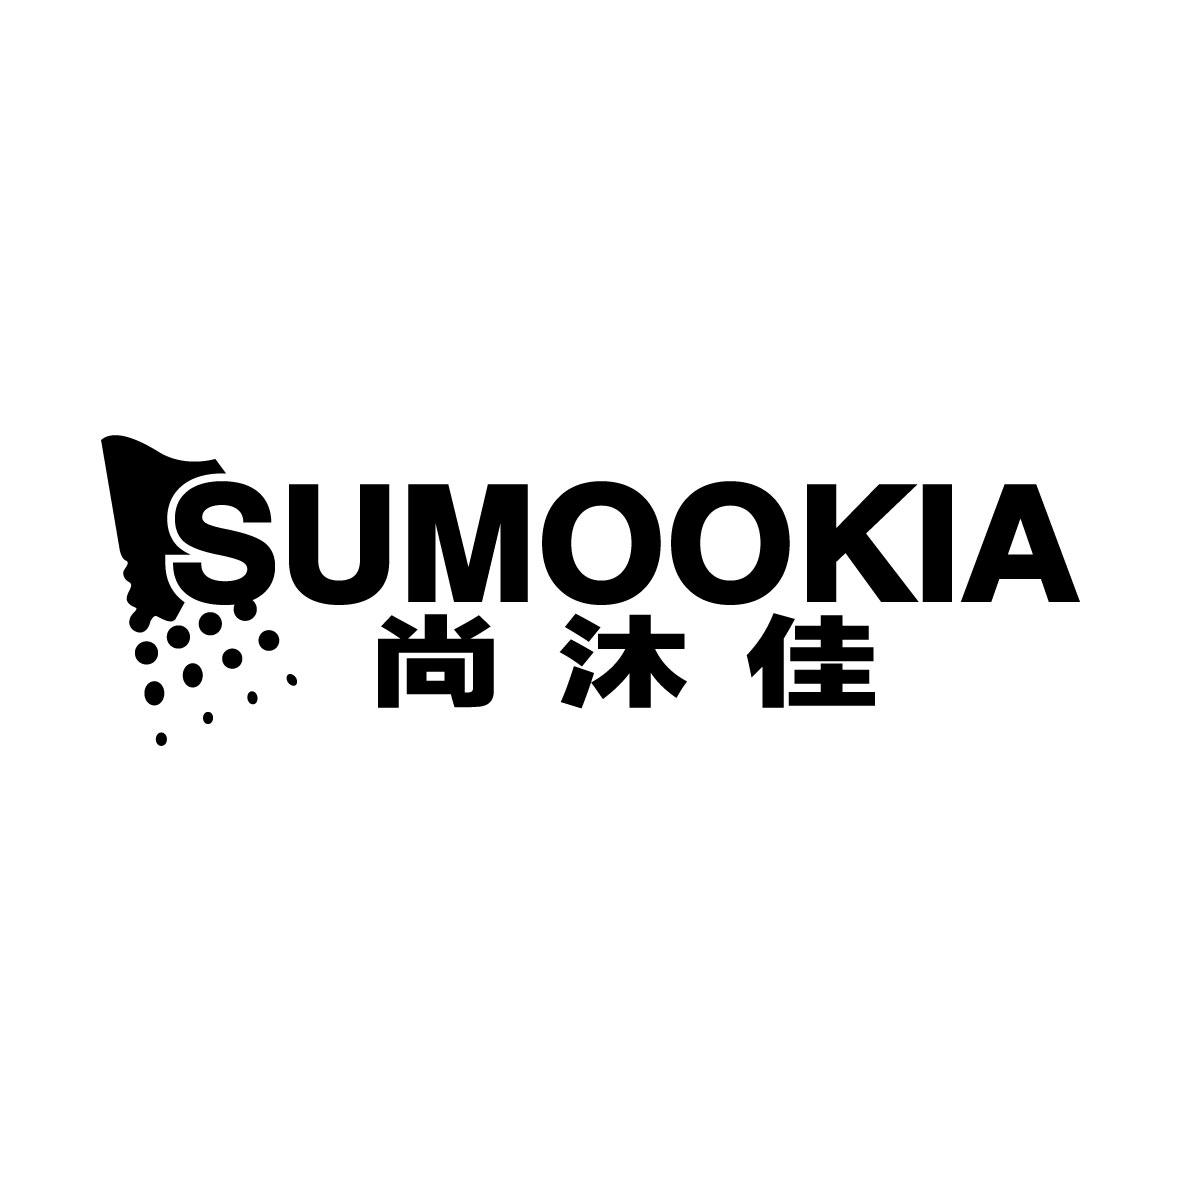  SUMOOKIA